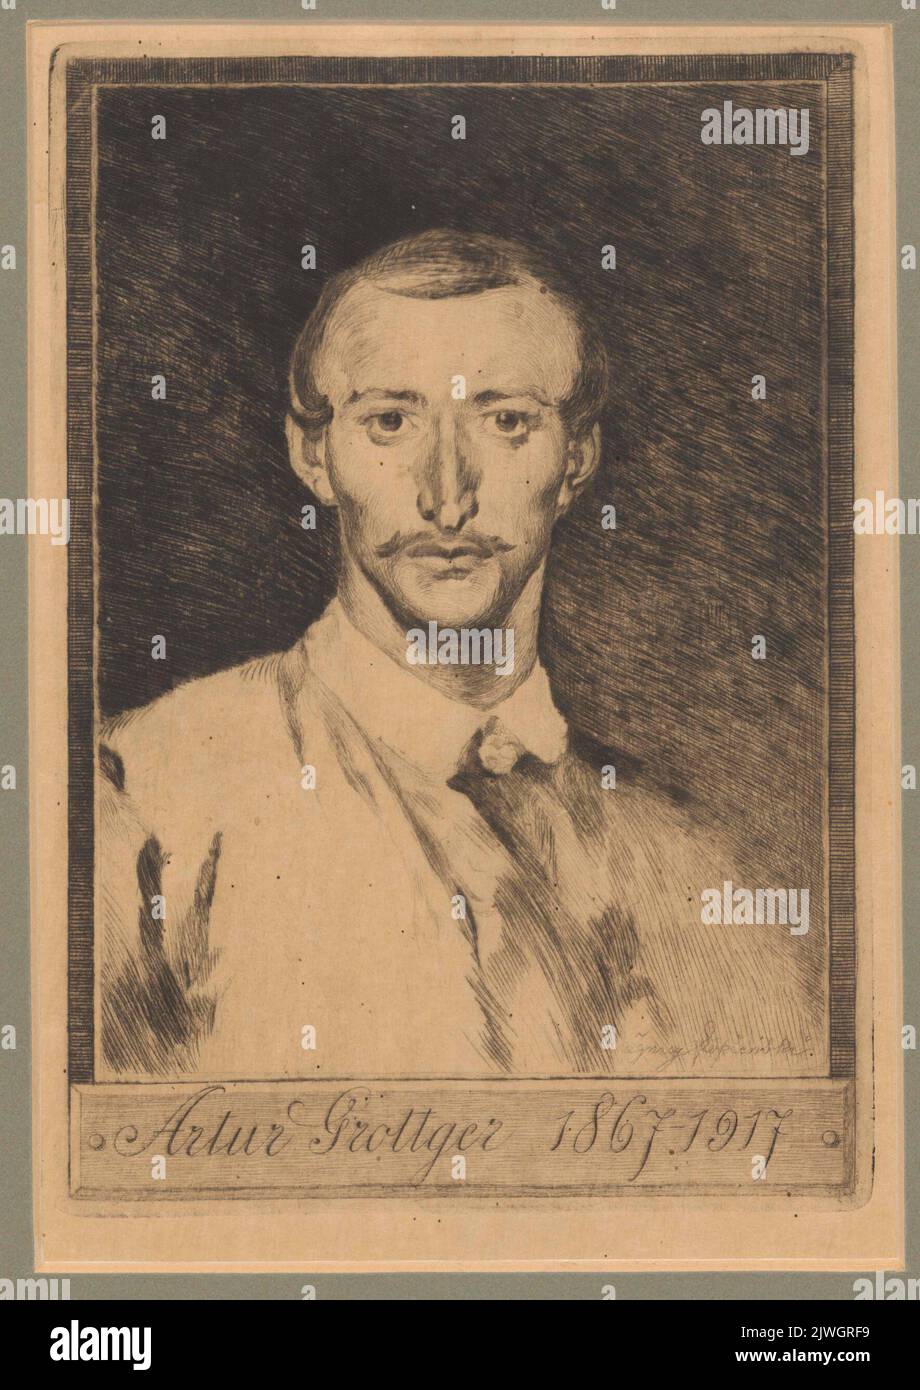 Portrait of Artur Grottger after self-portrait. Łopieński, Ignacy (1865-1941), graphic artist, Grottger, Artur (1837-1867), painter Stock Photo